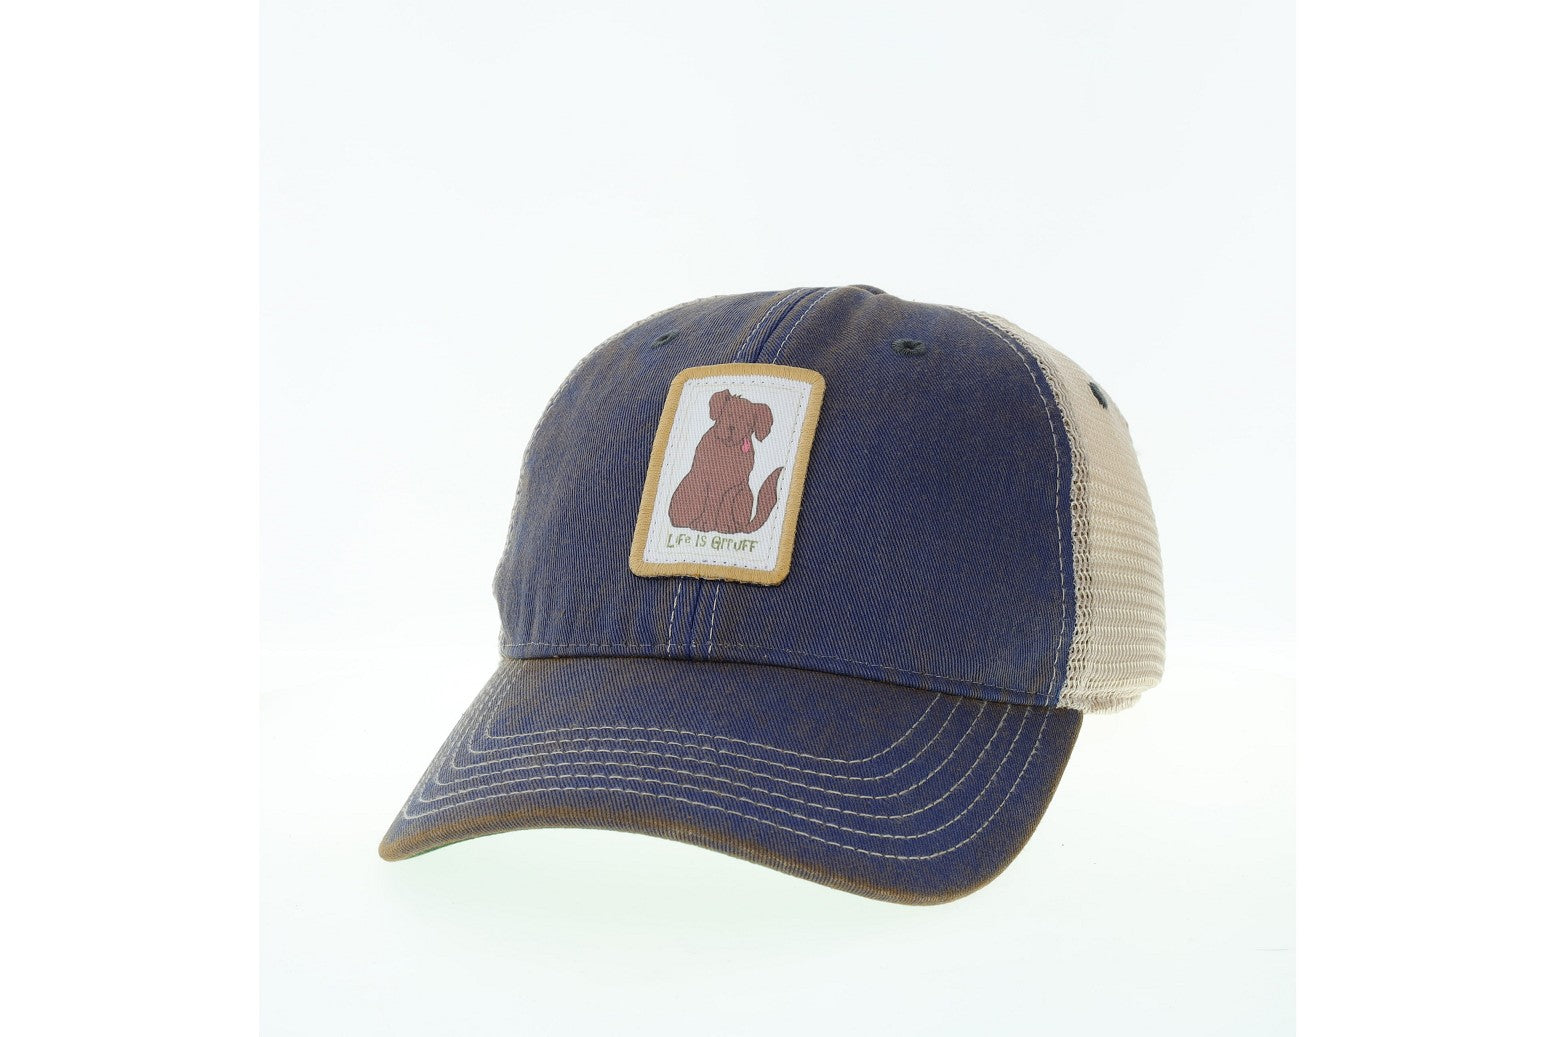 LIG Old Friend Trucker Dog Hat 3 colors